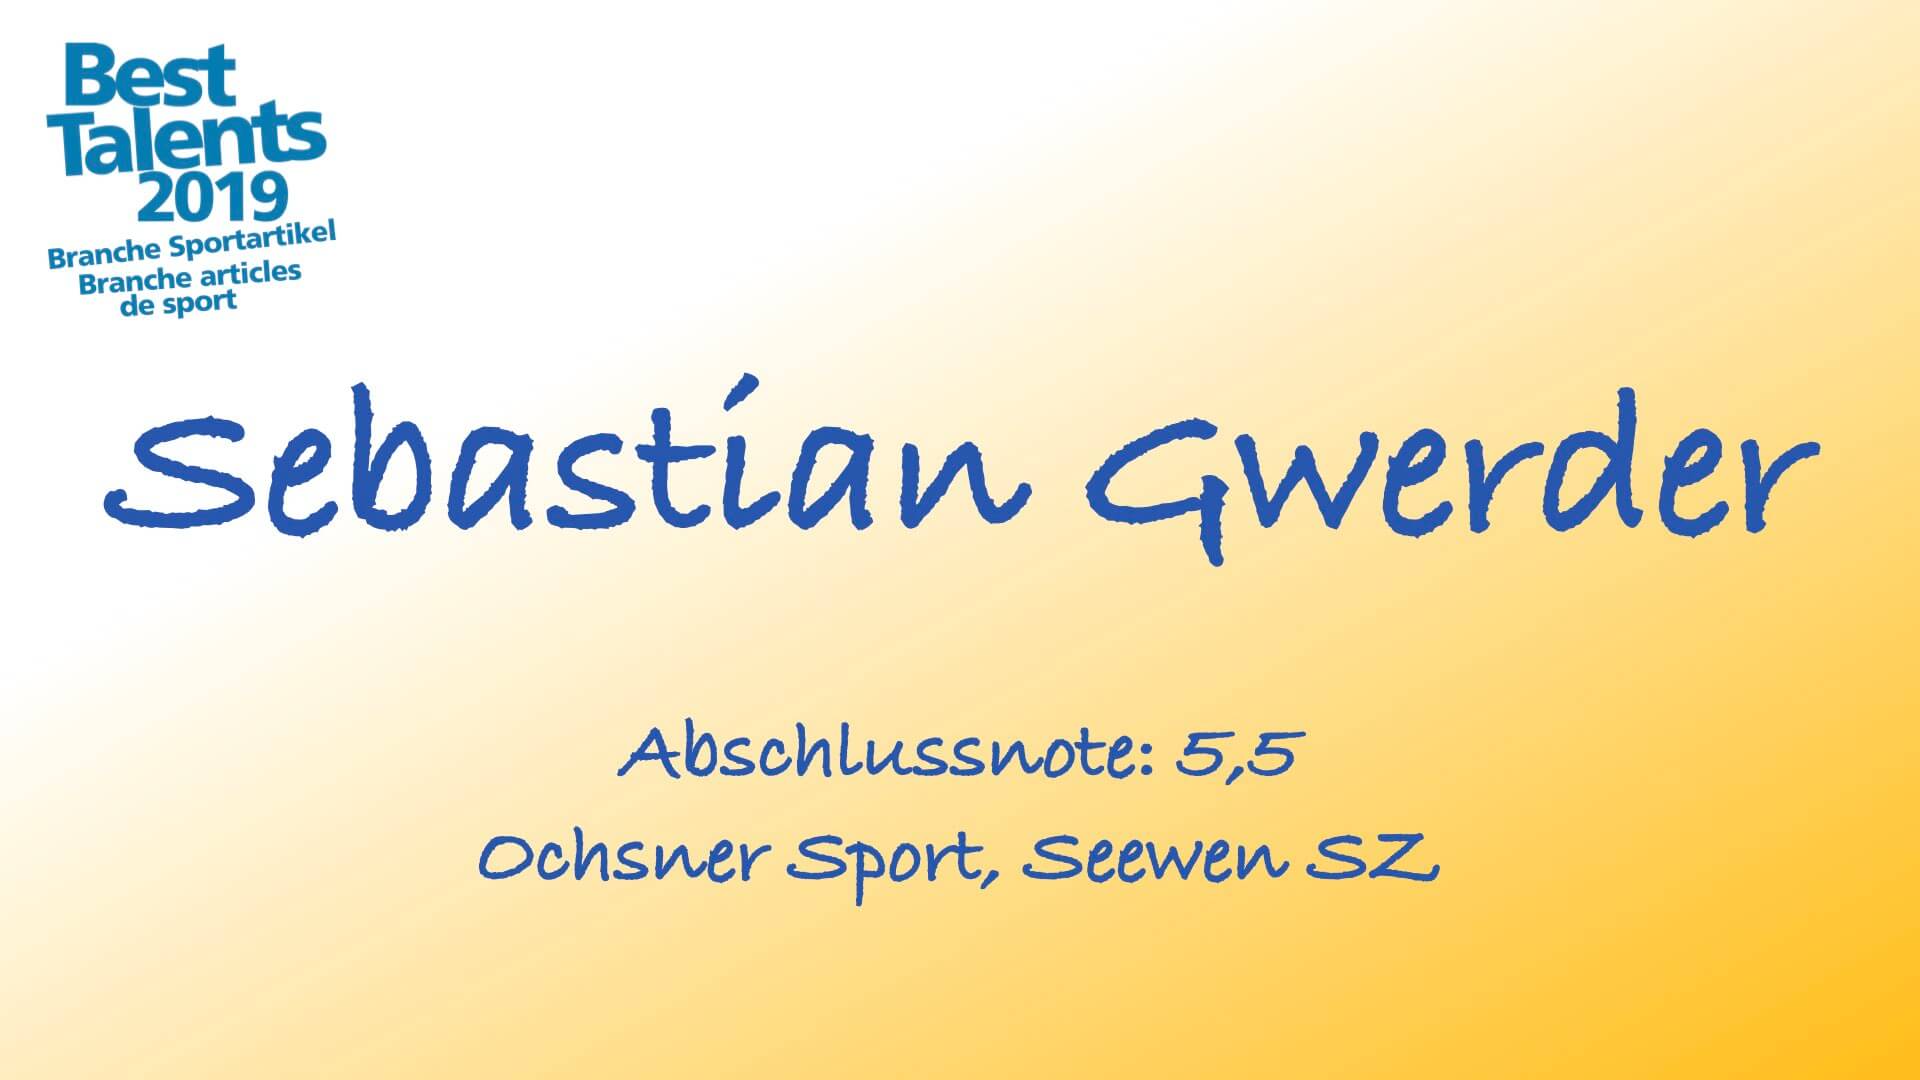 Sebastian Gwerder.001